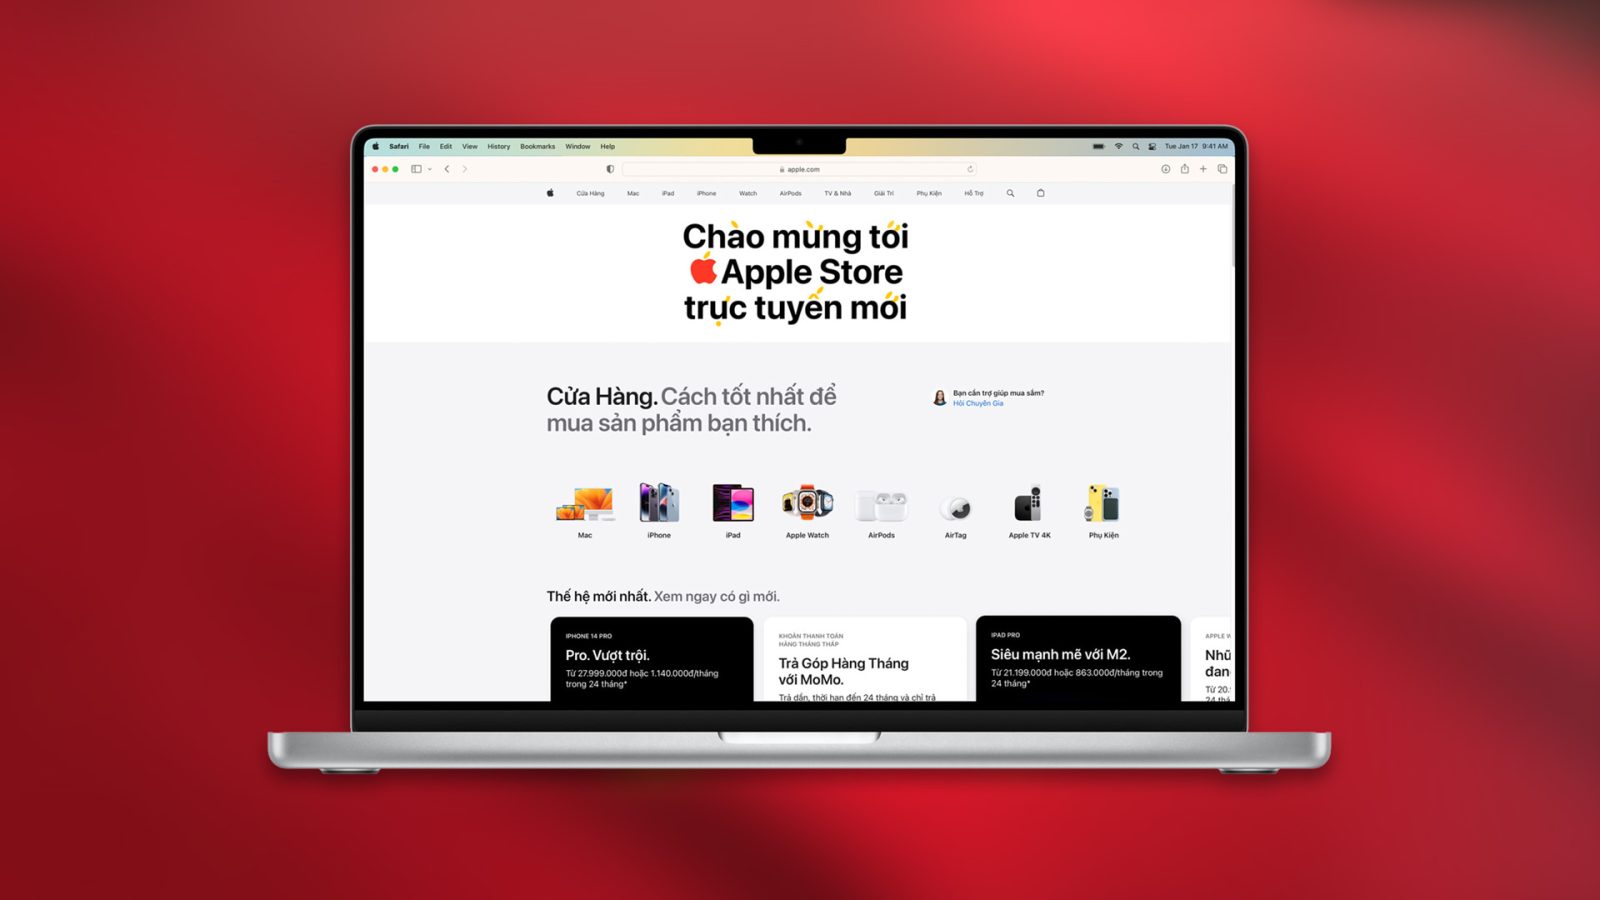 Apple запускает свой интернет-магазин во Вьетнаме с индивидуальными продуктами и Apple Watch Studio.